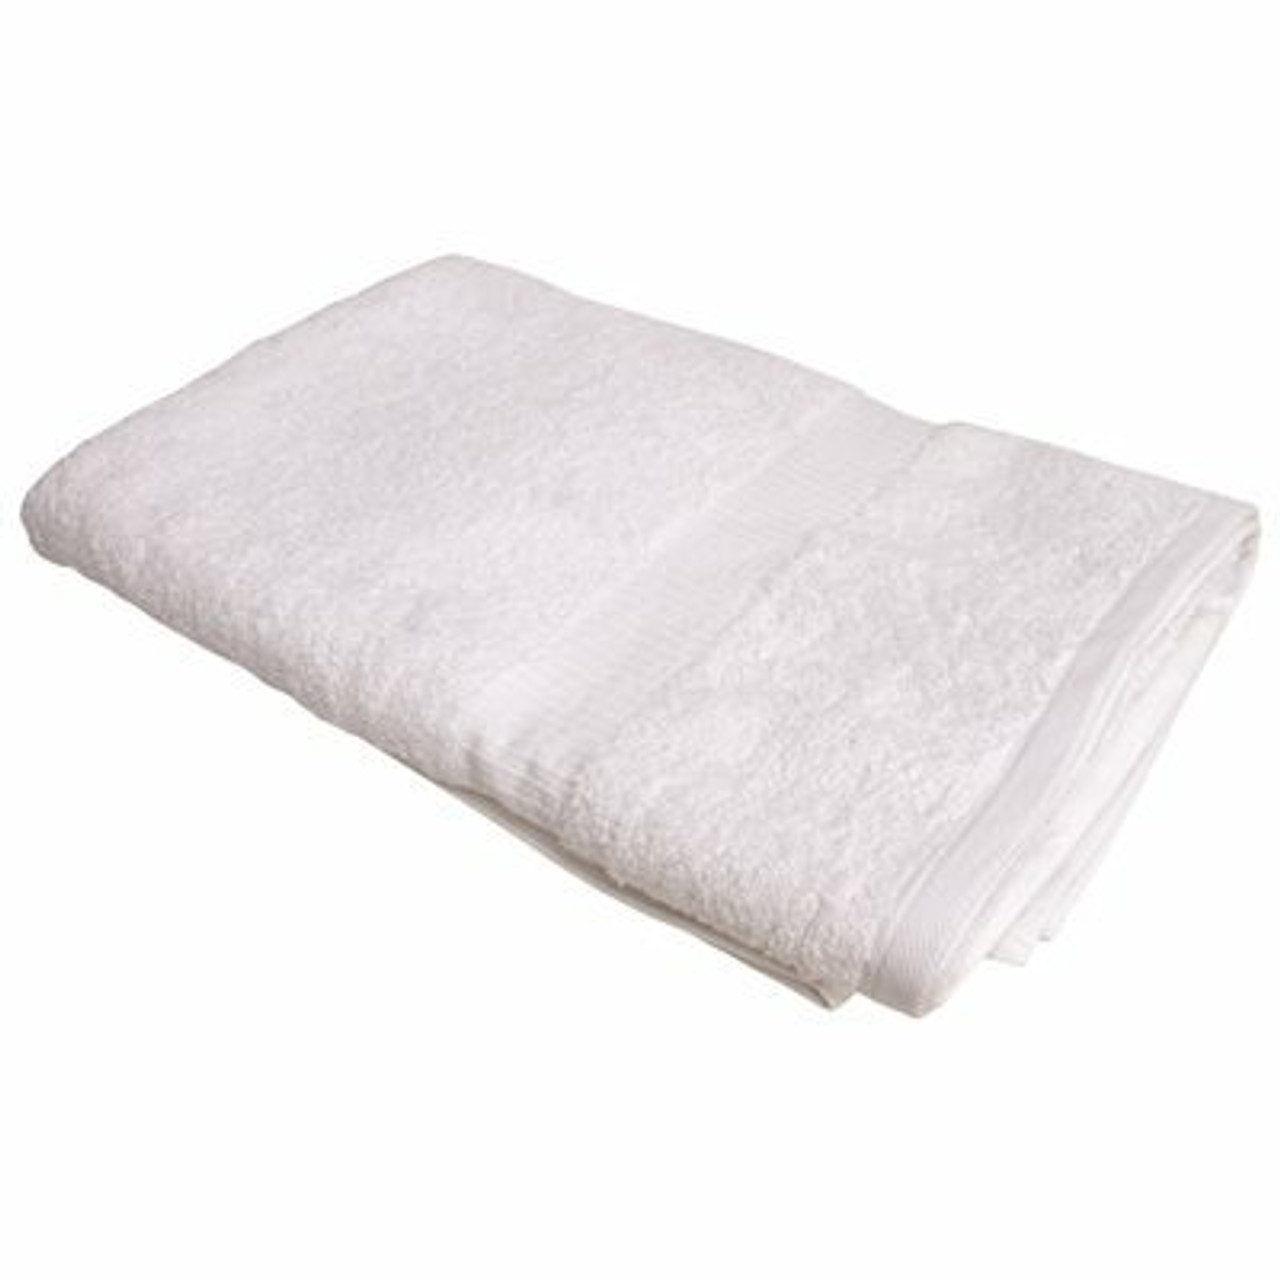 Oxford Bellezza Ribbed Collection Bath Towel, 27 X 54 In., White, 17 Lb. Per Dozen, 36 Per Case